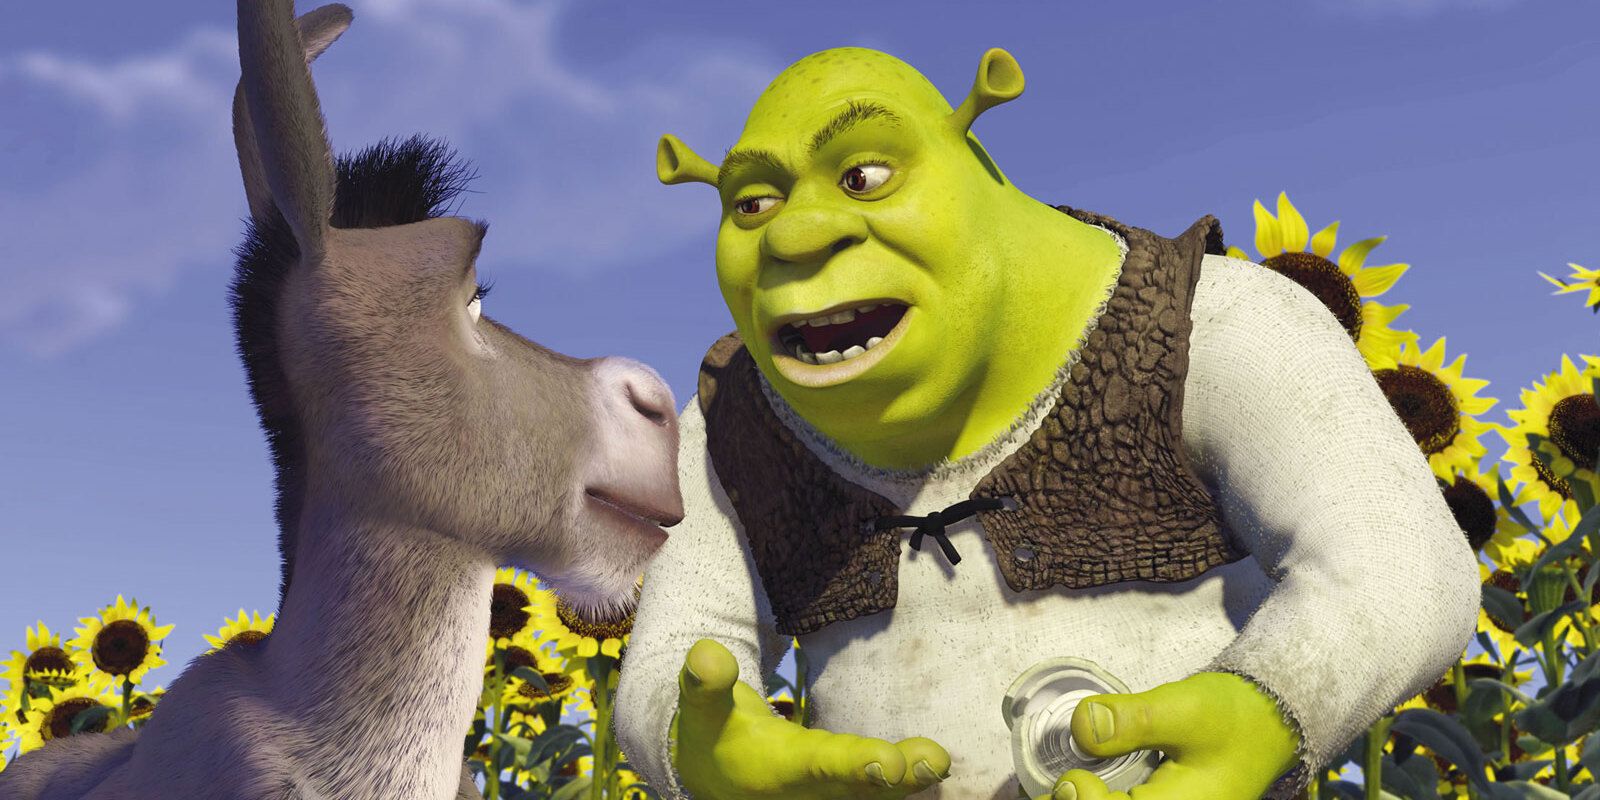 Shrek and Donkey talking in Shrek